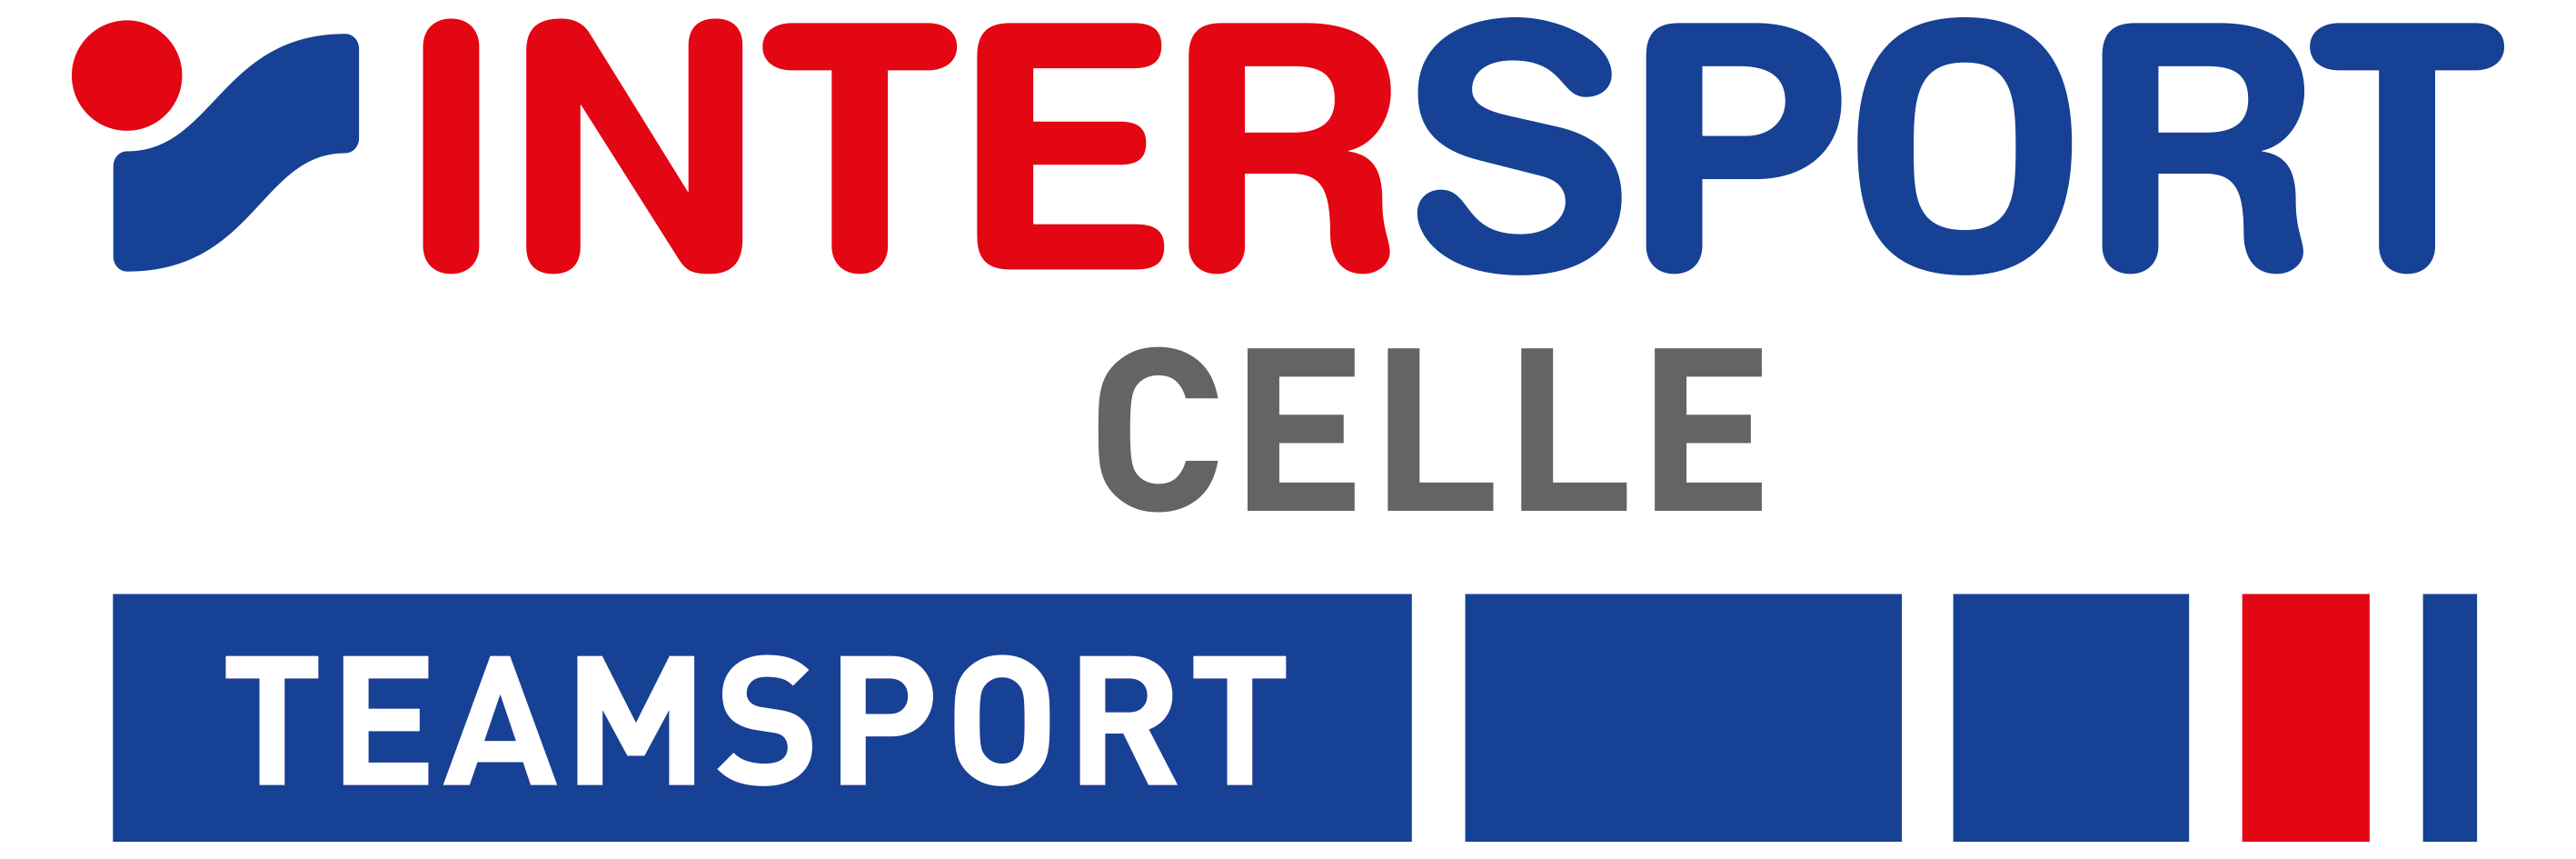 VfL Westercelle Logo 2